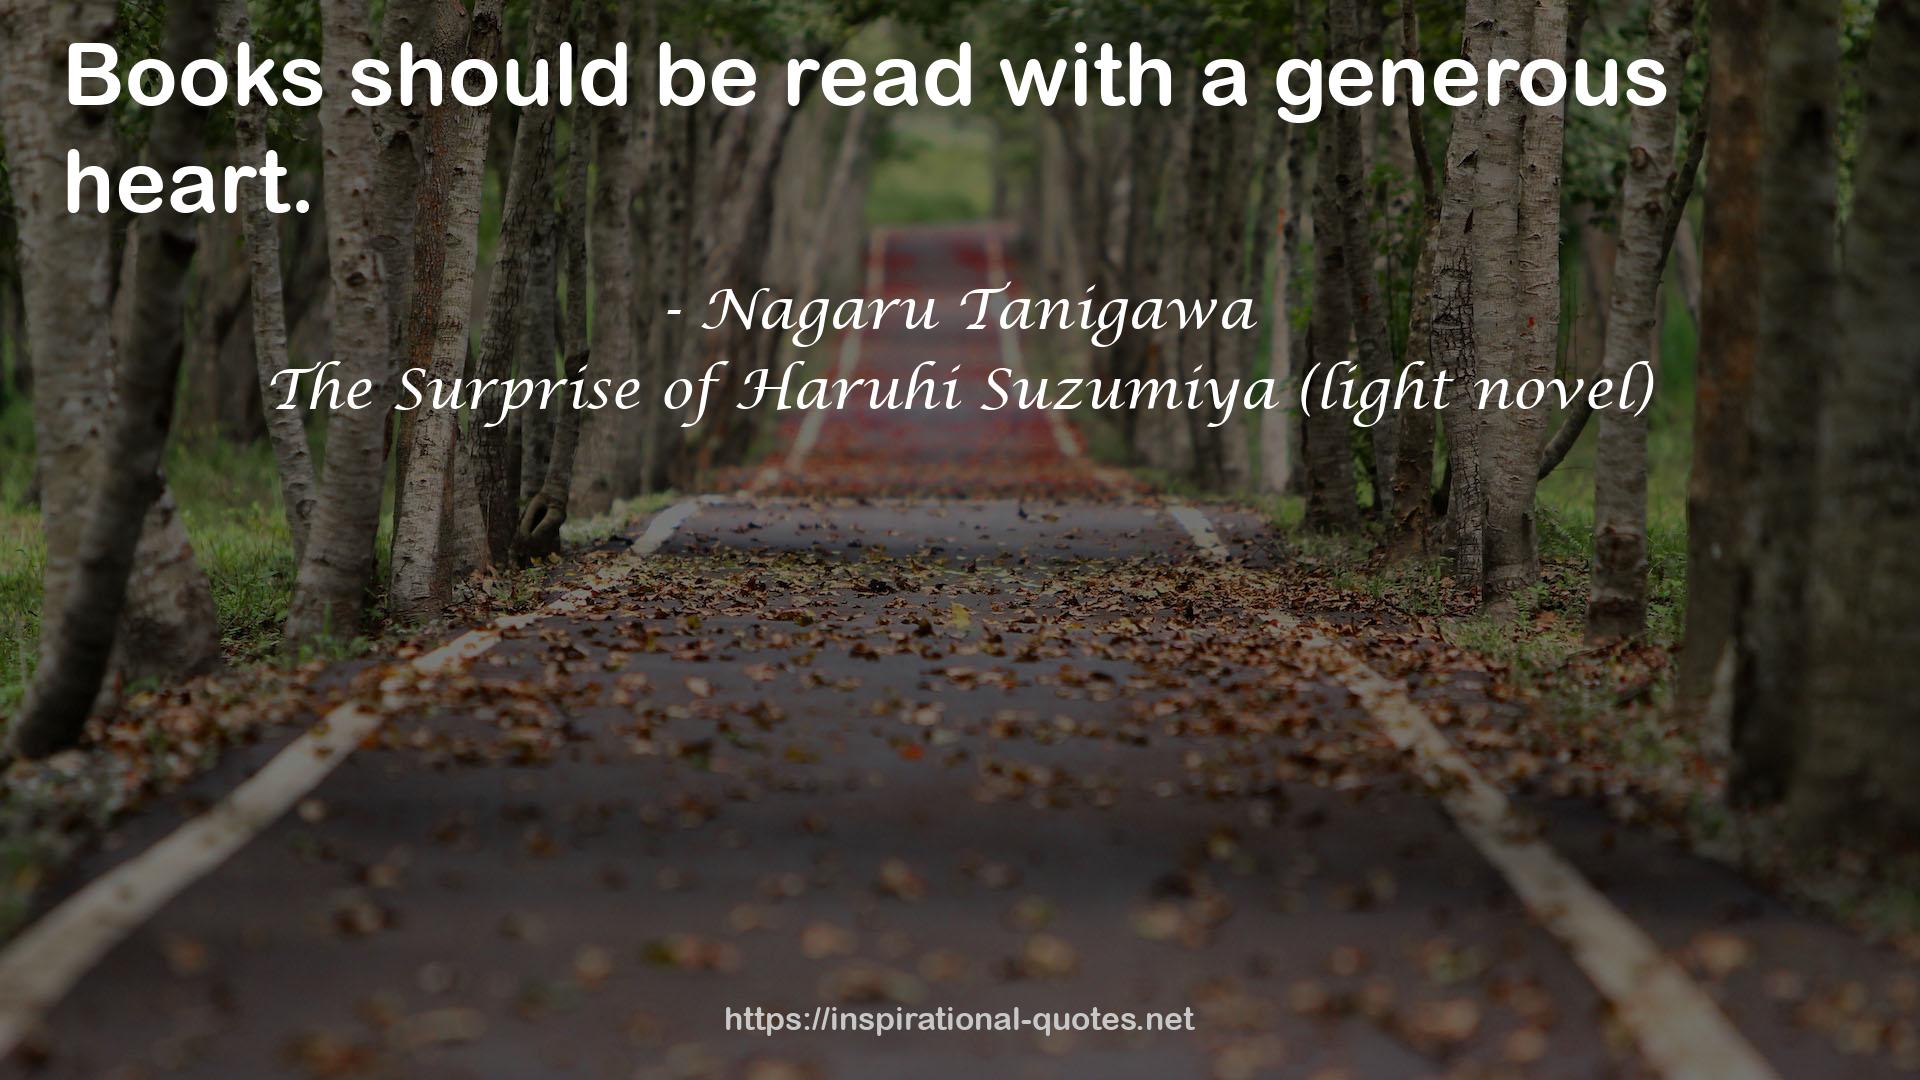 The Surprise of Haruhi Suzumiya (light novel) QUOTES